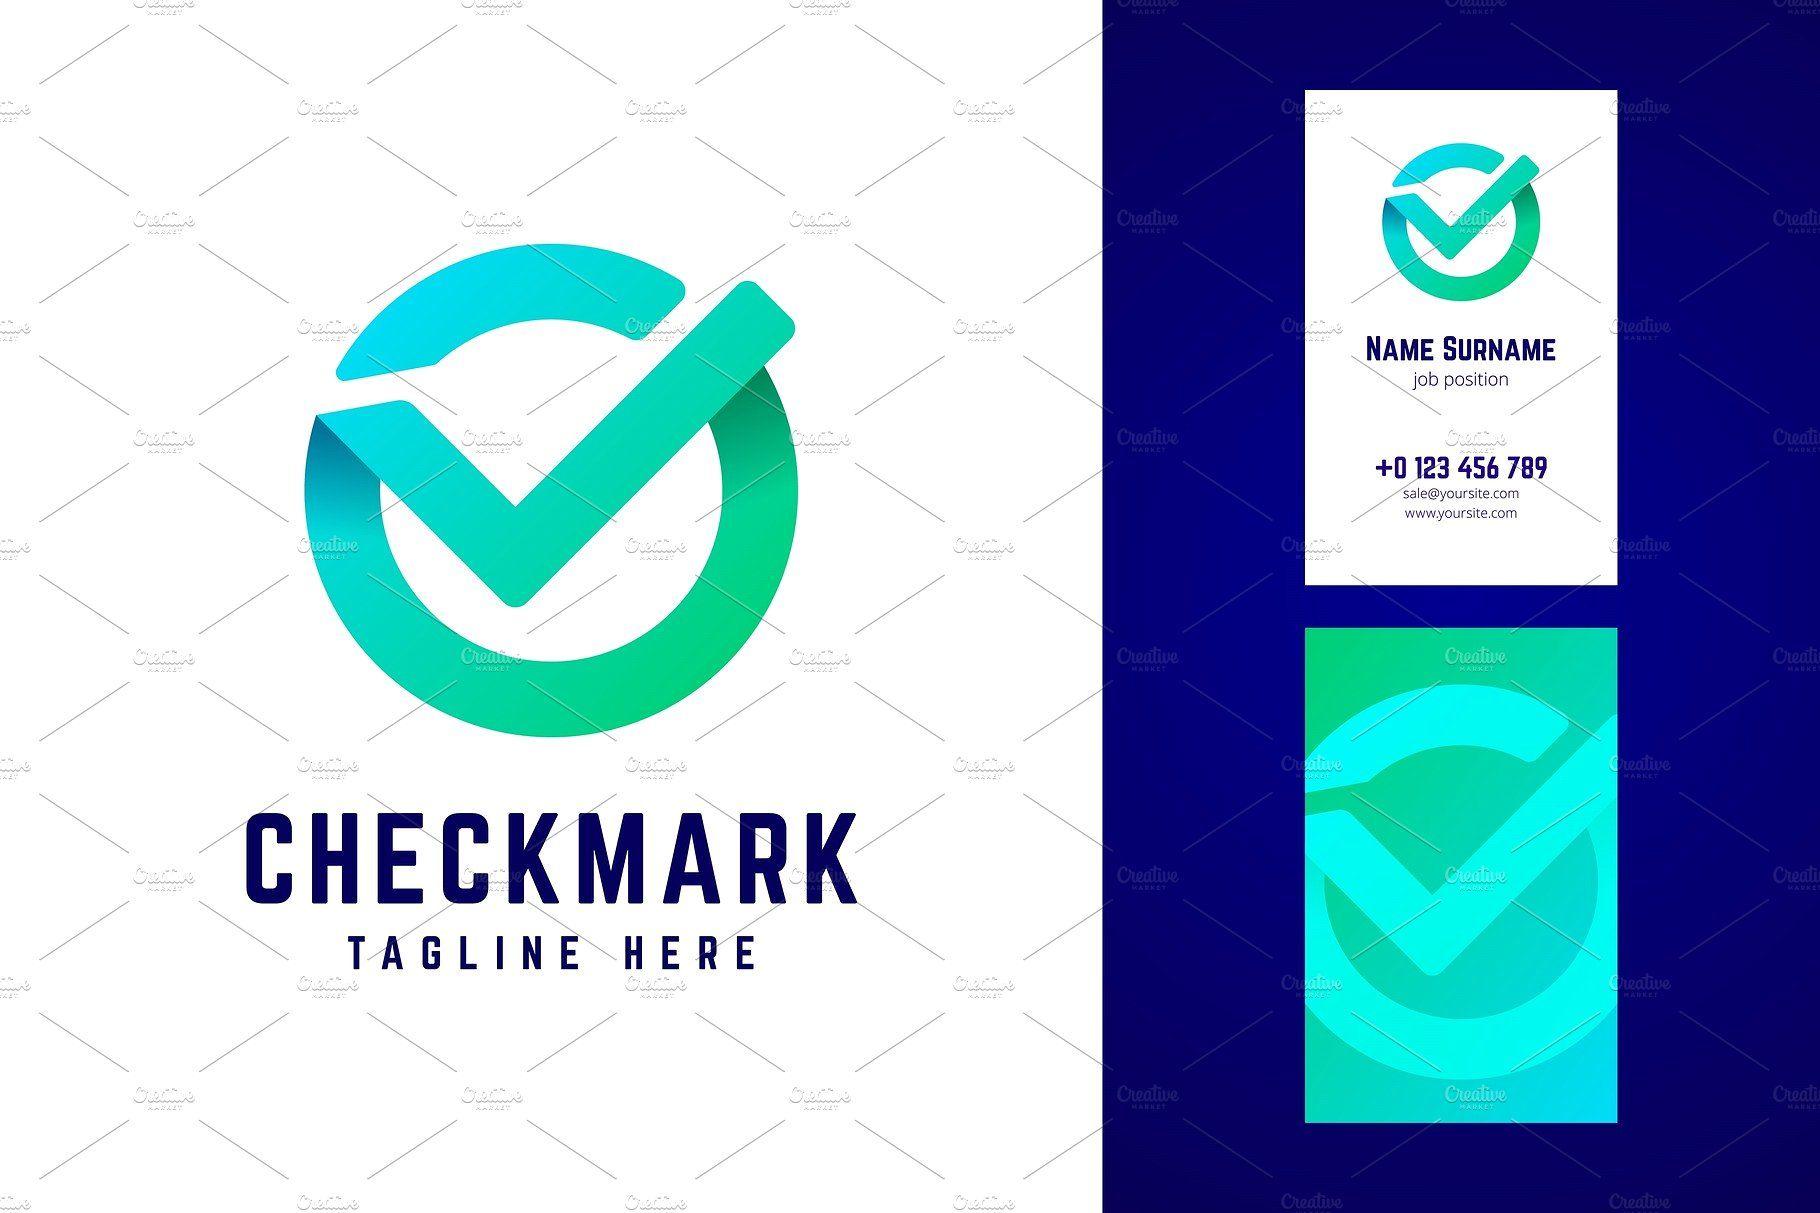 Checkmark Logo - Check mark logo and business card Logo Templates Creative Market